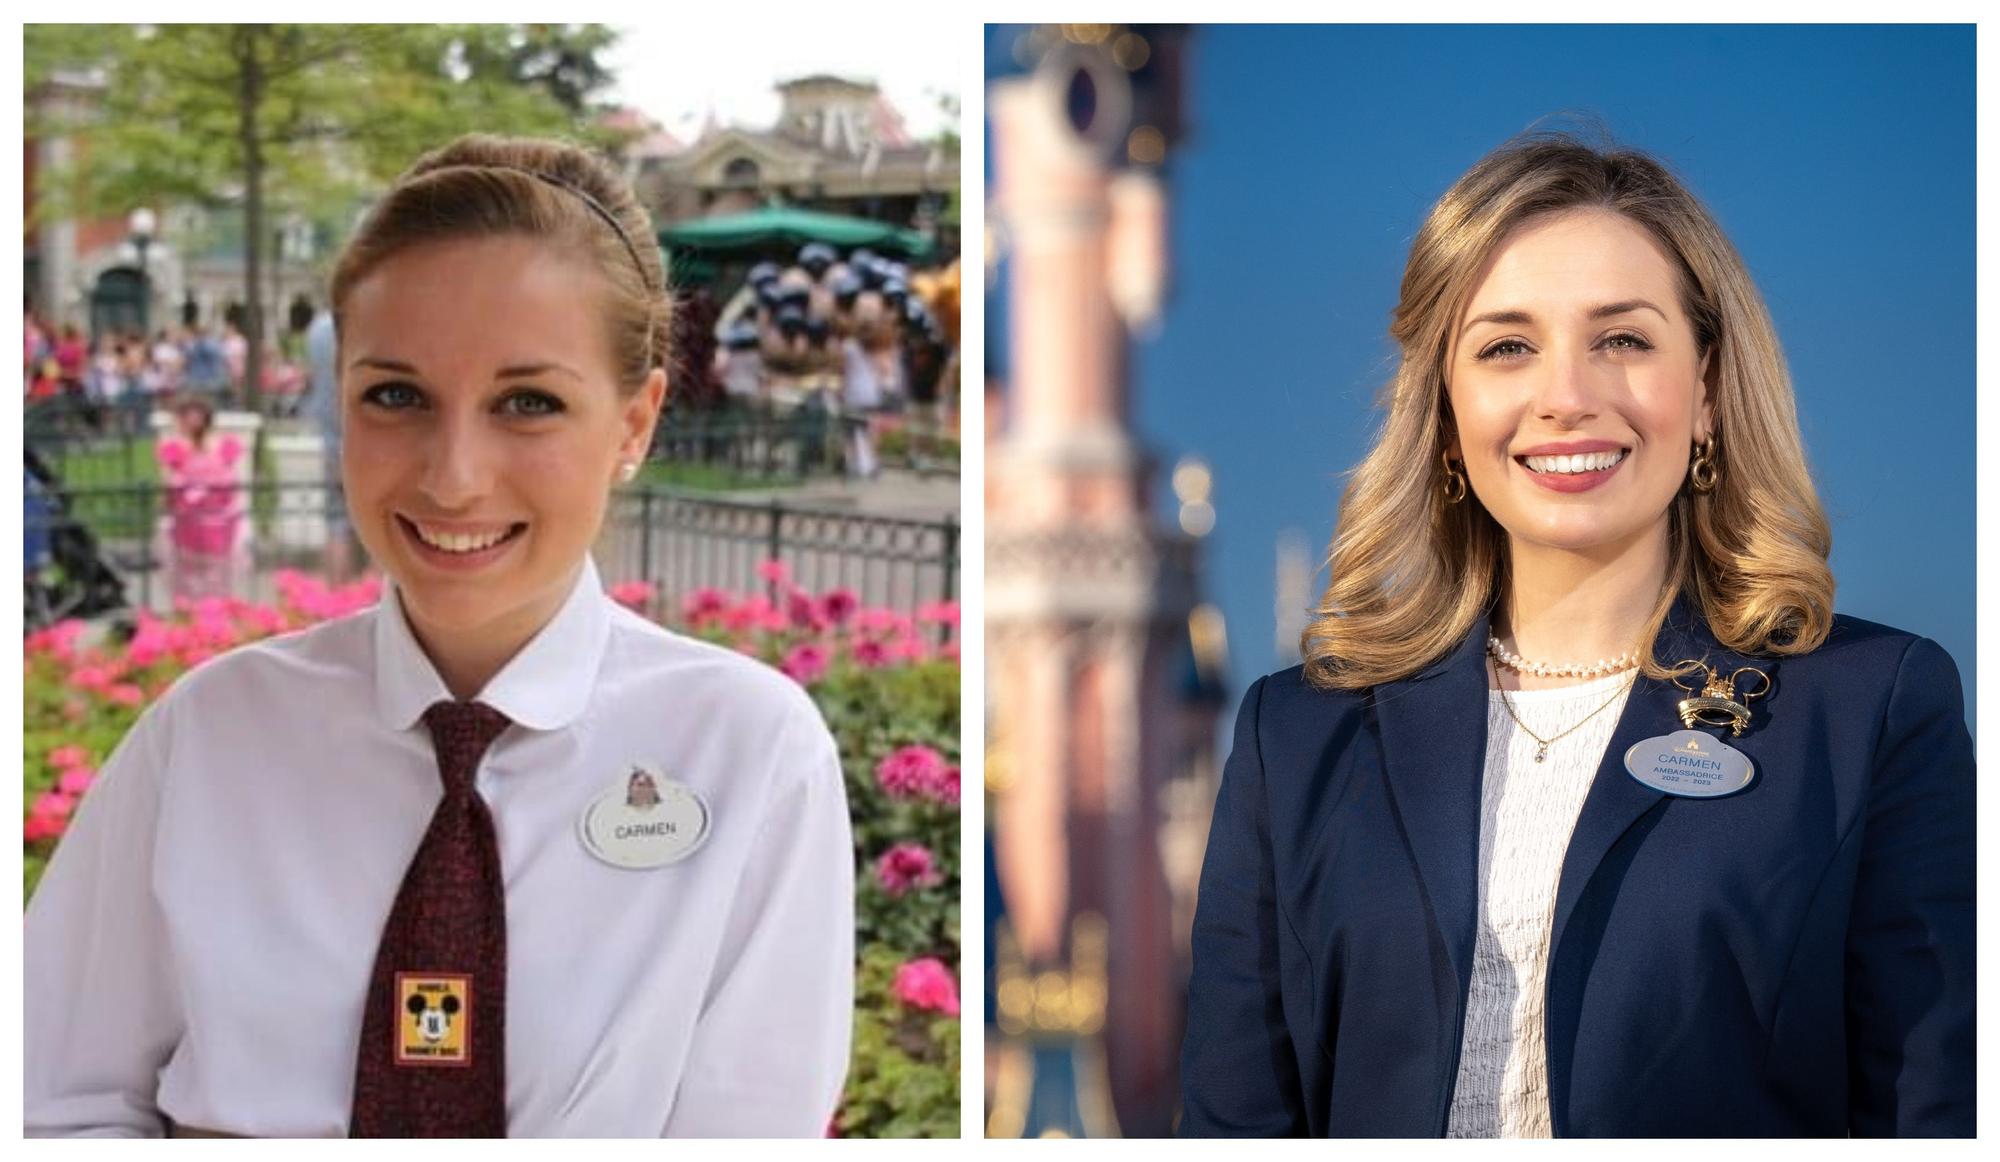 Carmen comenzó en 2011 a trabajar en Disney (izquierda), y en la actualidad es la embajadora del parque en el 30 aniversario del mismo.